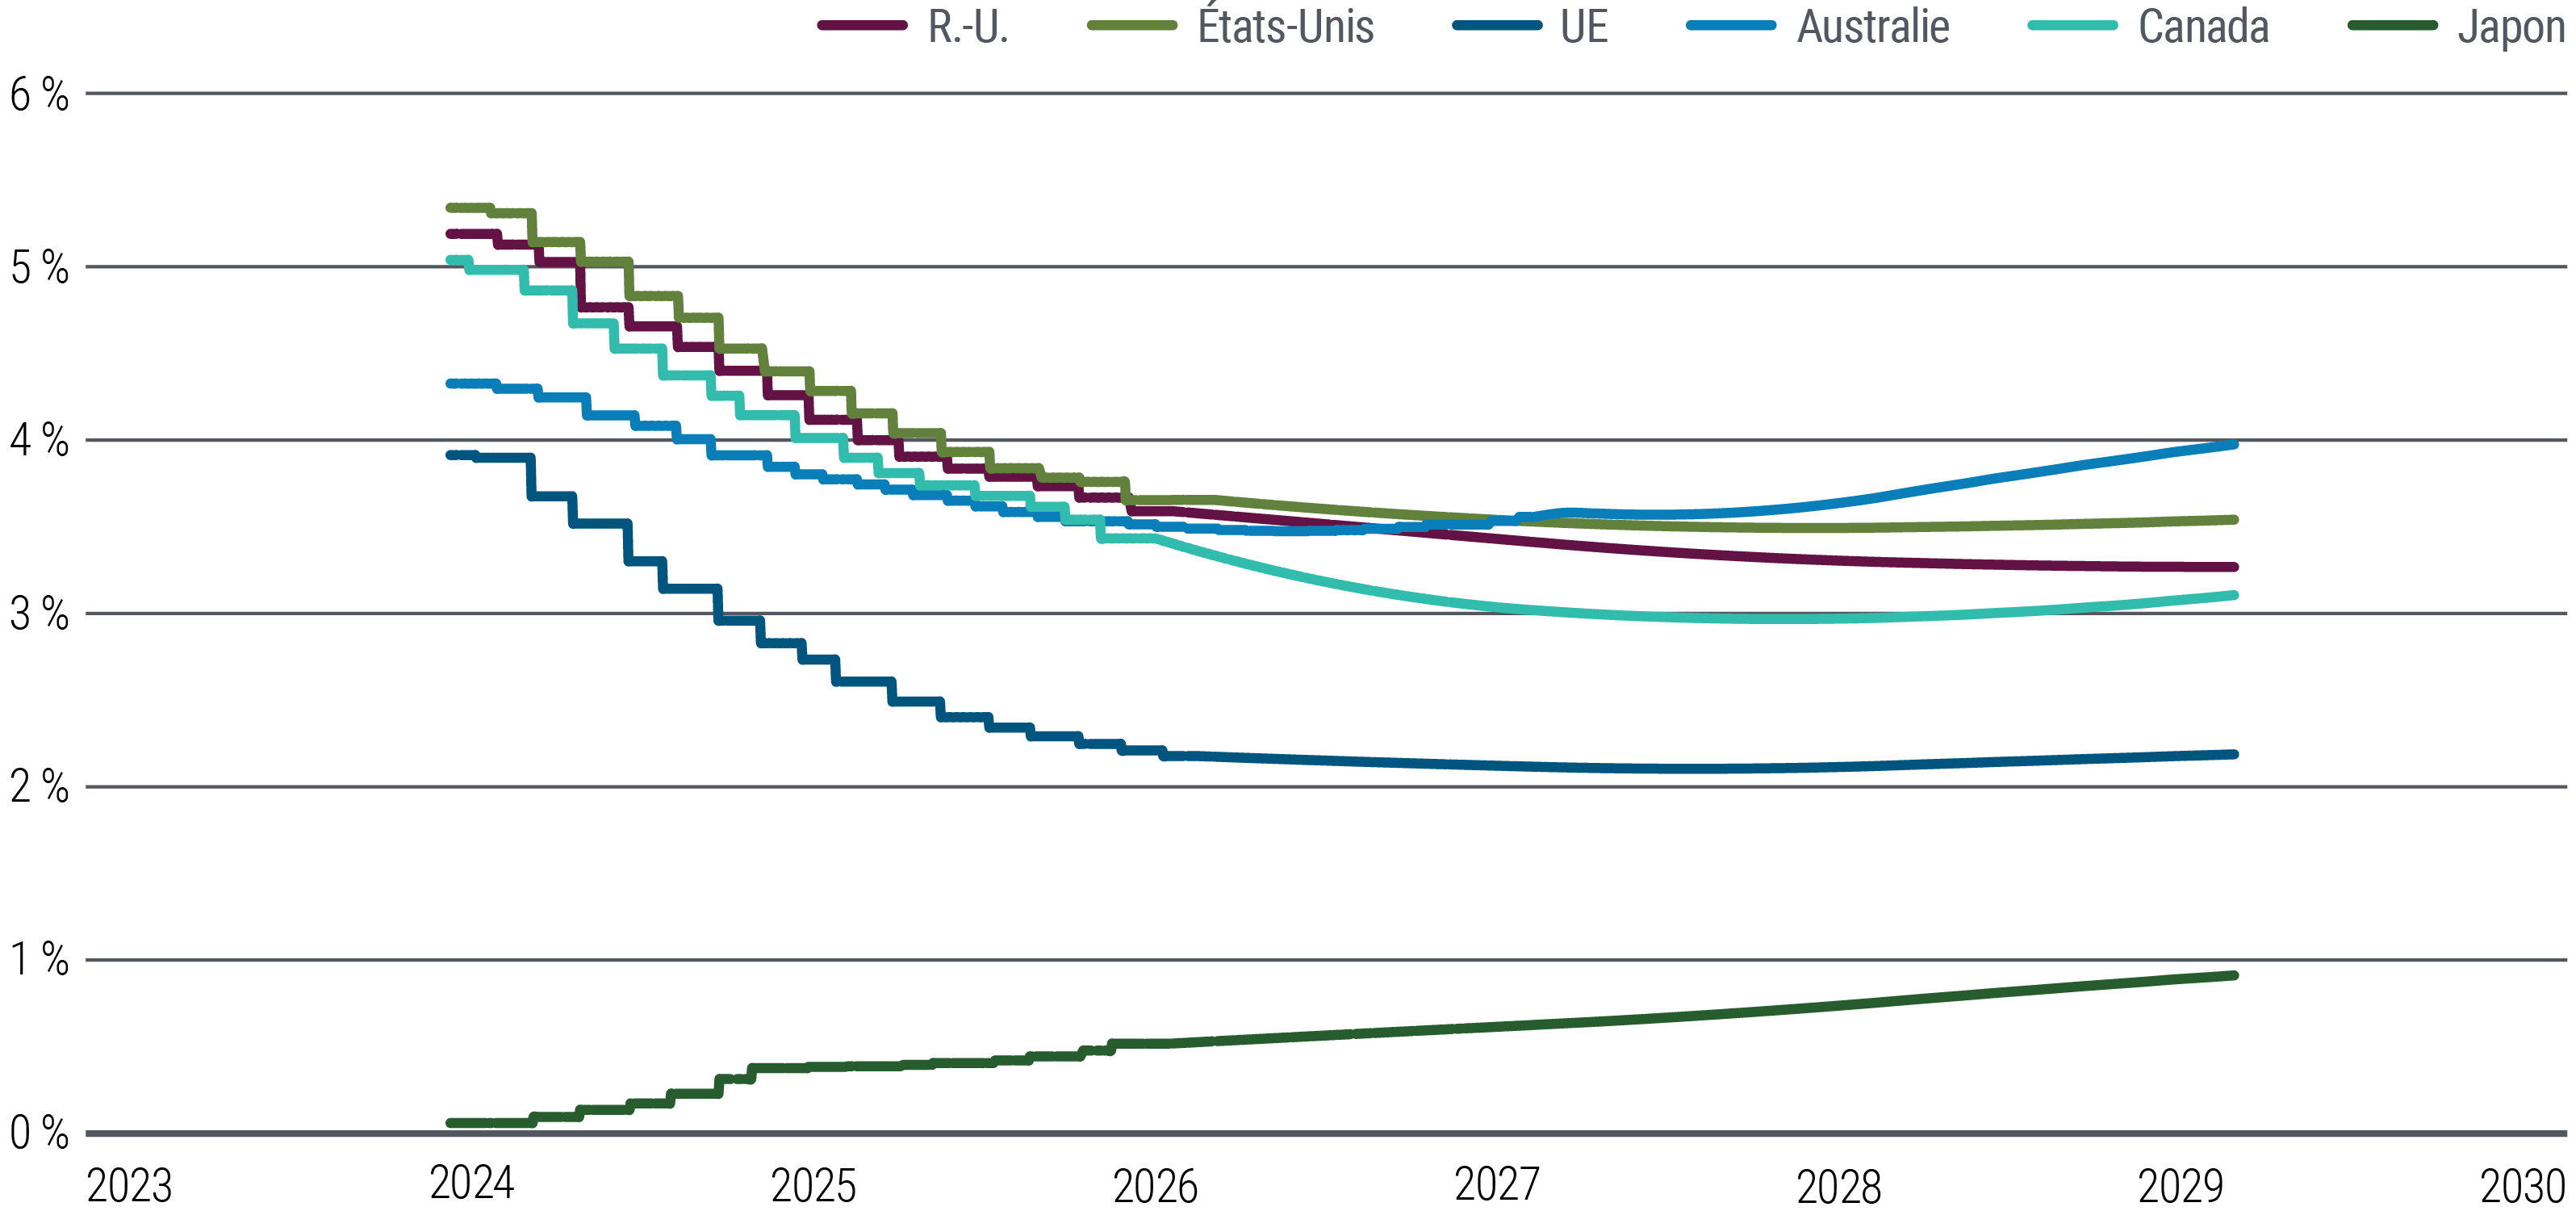 La figure 5 est un graphique linéaire montrant les valorisations actuelles (mars 2024) des taux d’intérêt à court terme des contrats à terme aux États-Unis, dans la zone euro, au Royaume-Uni, au Japon, en Australie et au Canada jusqu’à début 2029, utilisées comme substituts aux estimations de marché du taux directeur final. Les marchés tablent sur une baisse progressive des taux à court terme des contrats à terme jusqu’en 2026 au moins dans toutes ces économies, à l’exception du Japon, suivie d'une période de stabilisation. Les contrats à terme américains sont valorisés autour de 3,6 % en 2029 et ceux de la zone euro autour de 2,2 %. Le marché des contrats à terme japonais suggère une hausse progressive et continue vers un niveau supérieur à 0 %.